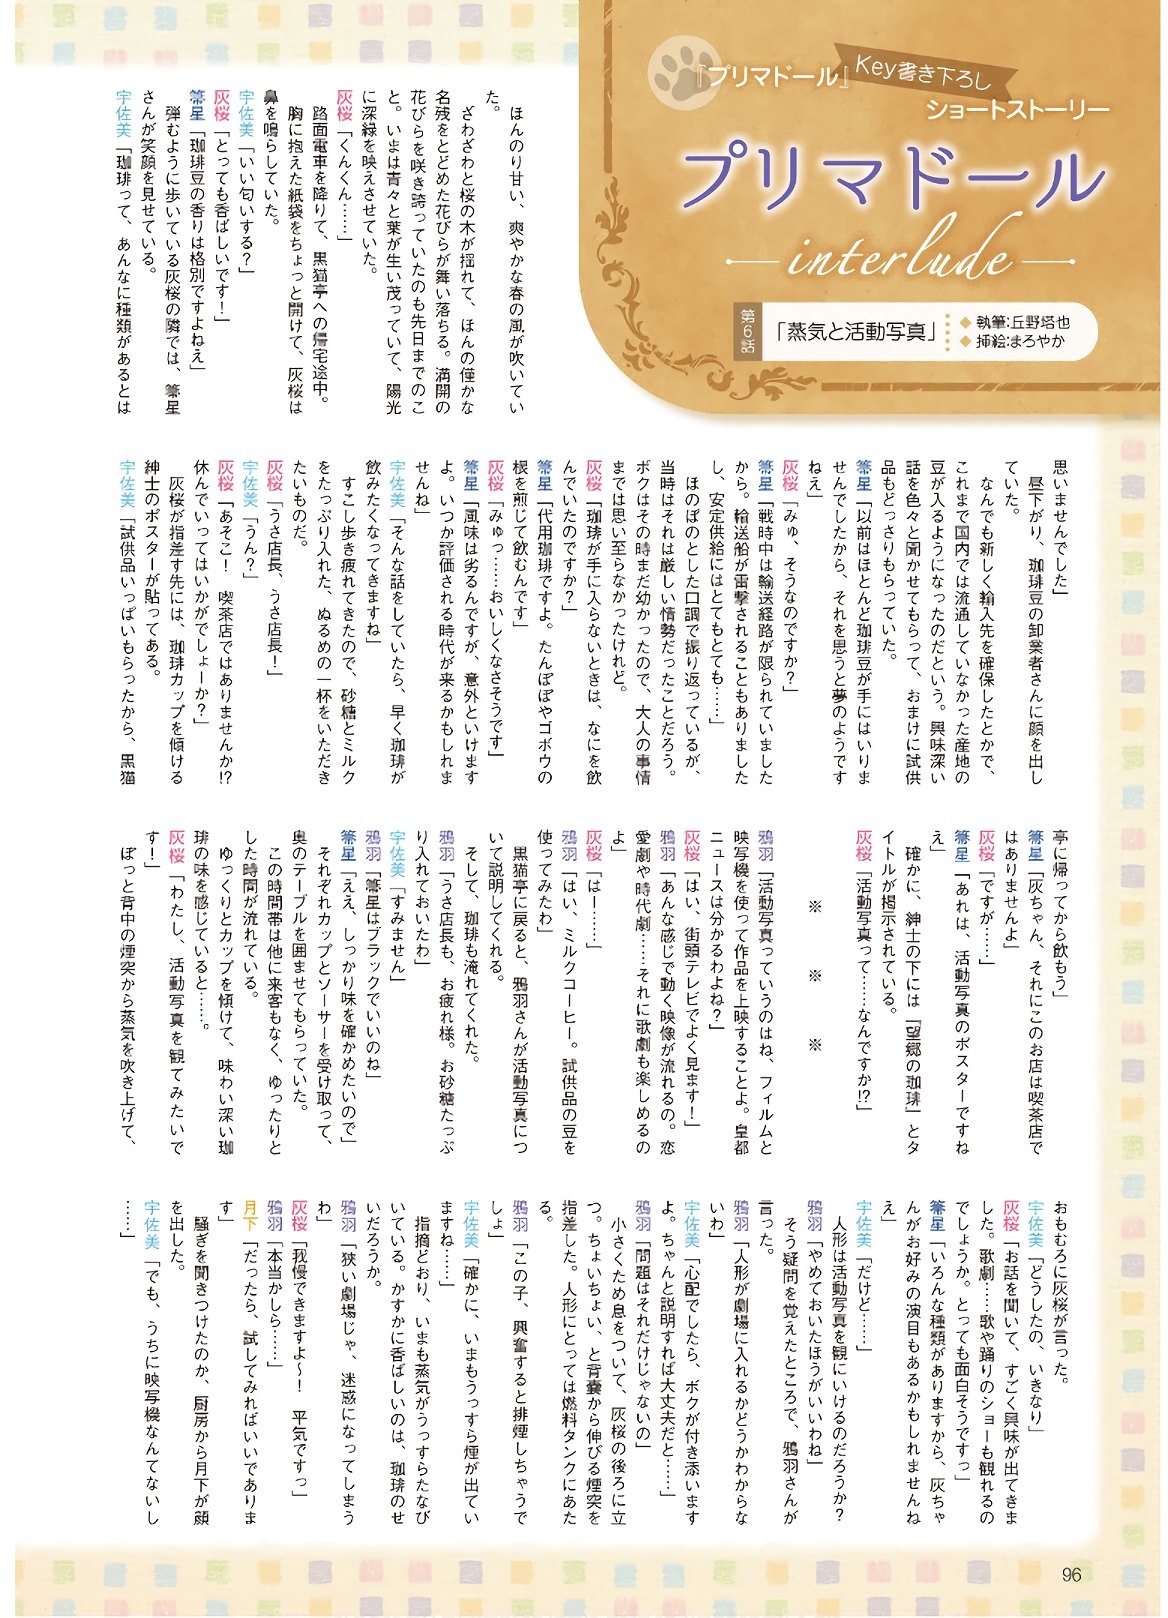 Dengeki G's Magazine #286 - May 2021 93